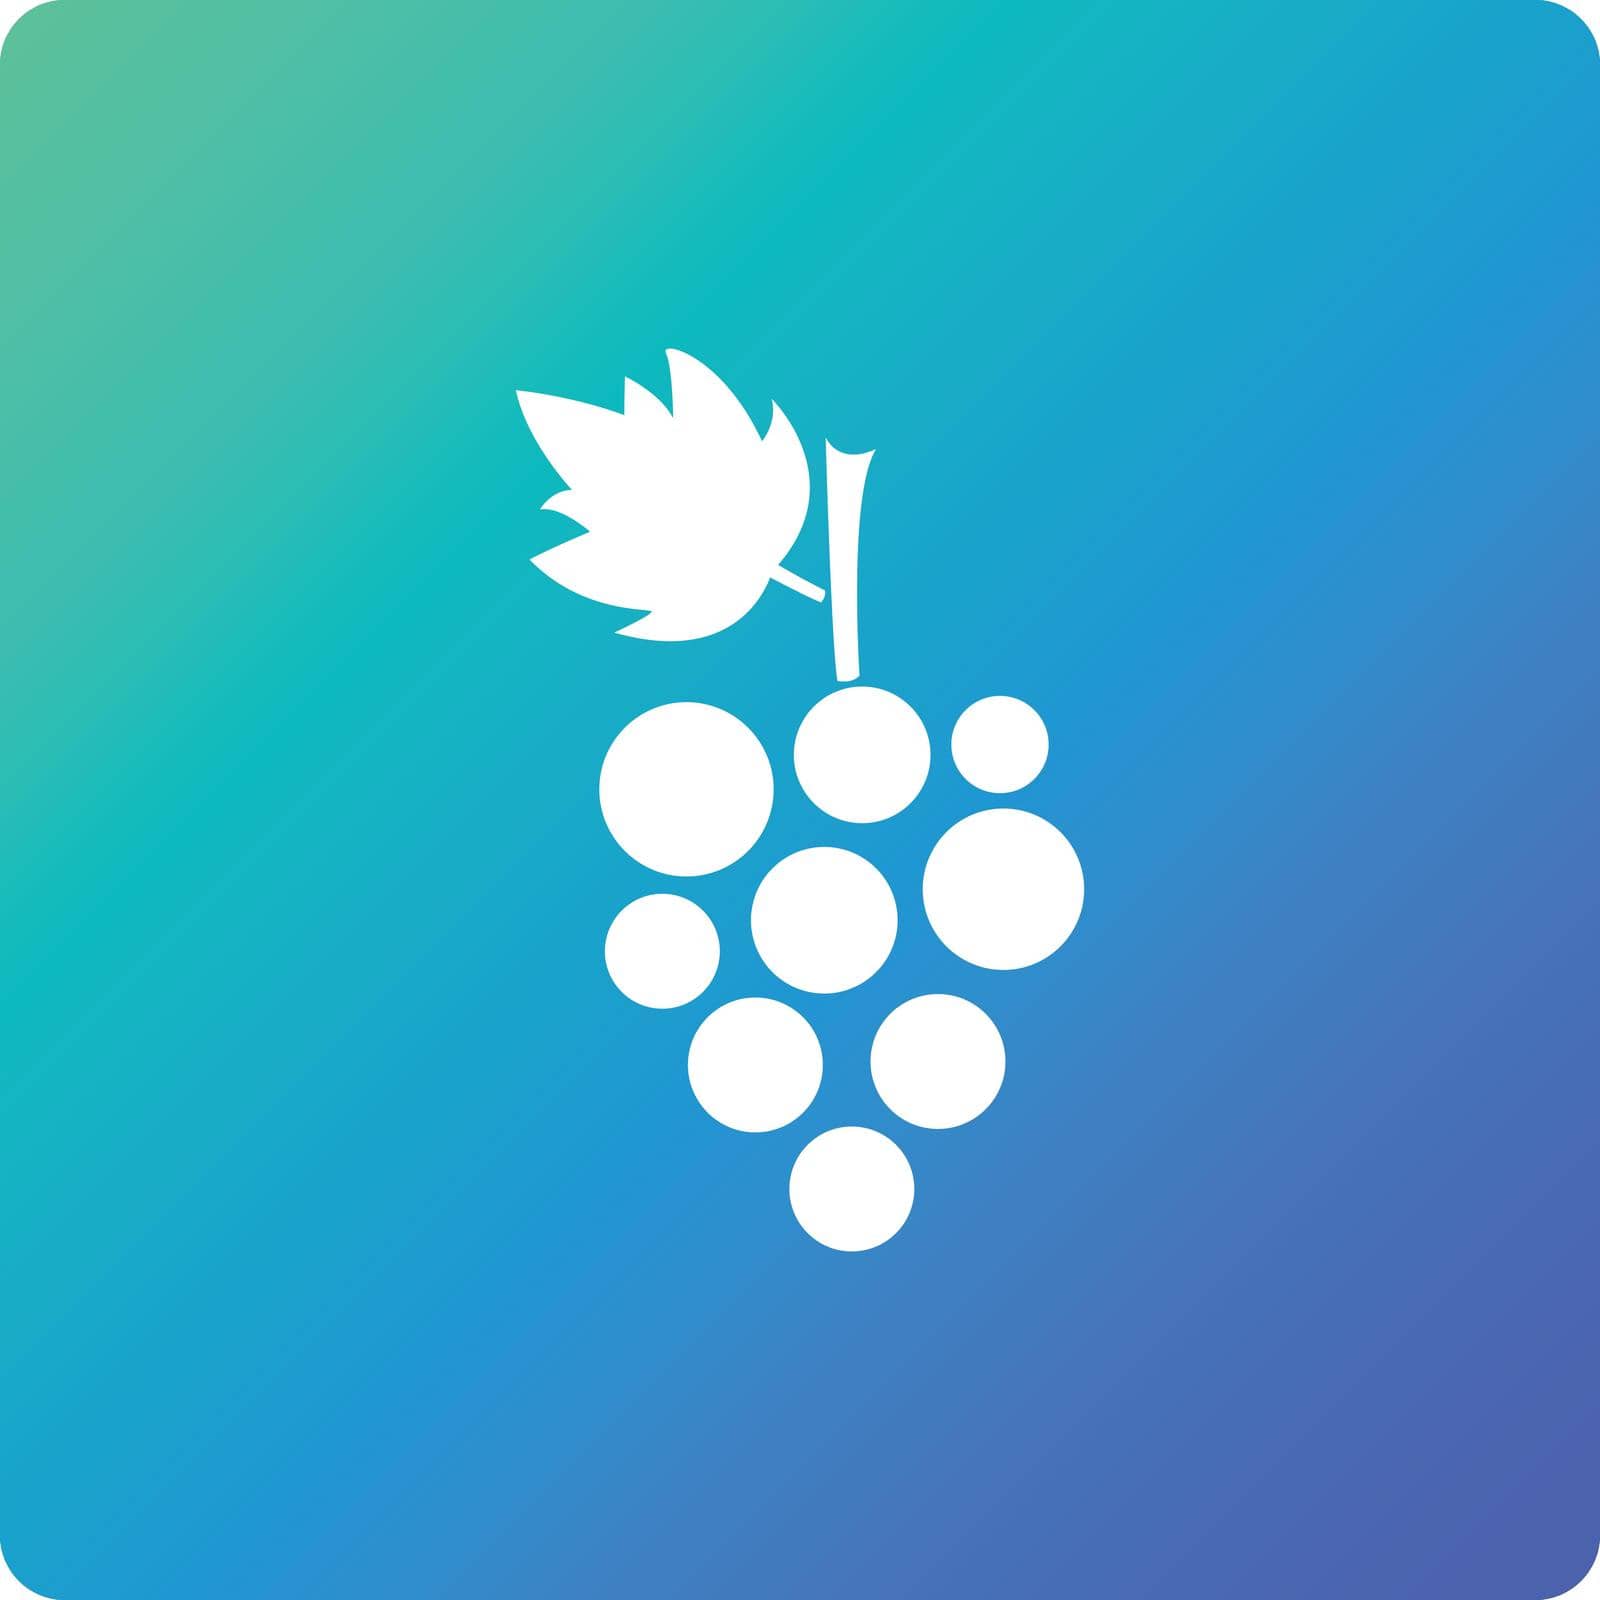 grape vector icon. grape single web icon on trendy gradient